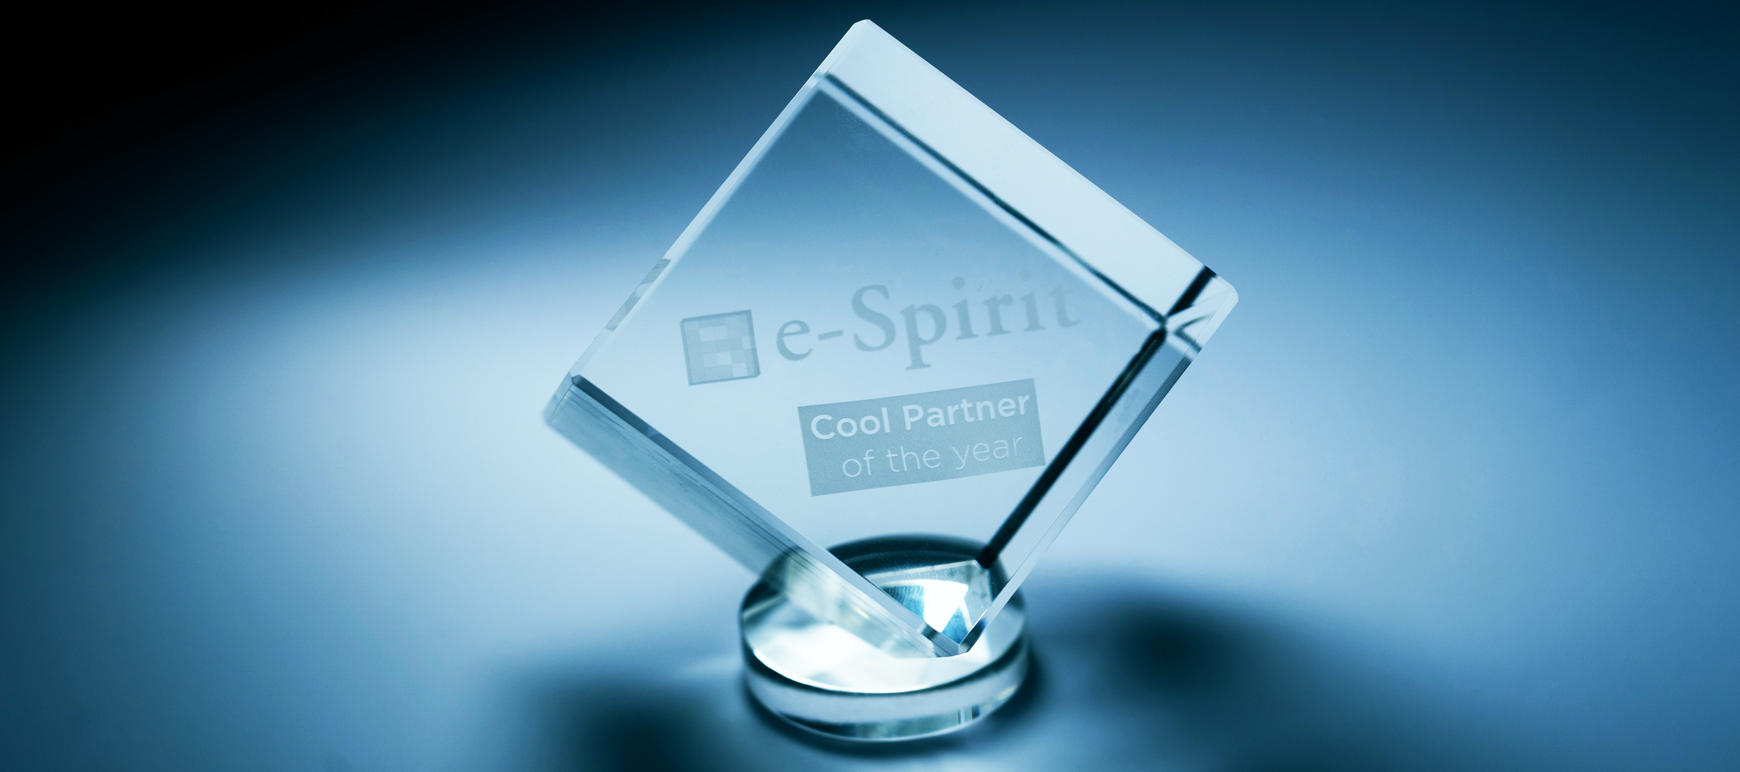 e-spirit cool Partner 2018